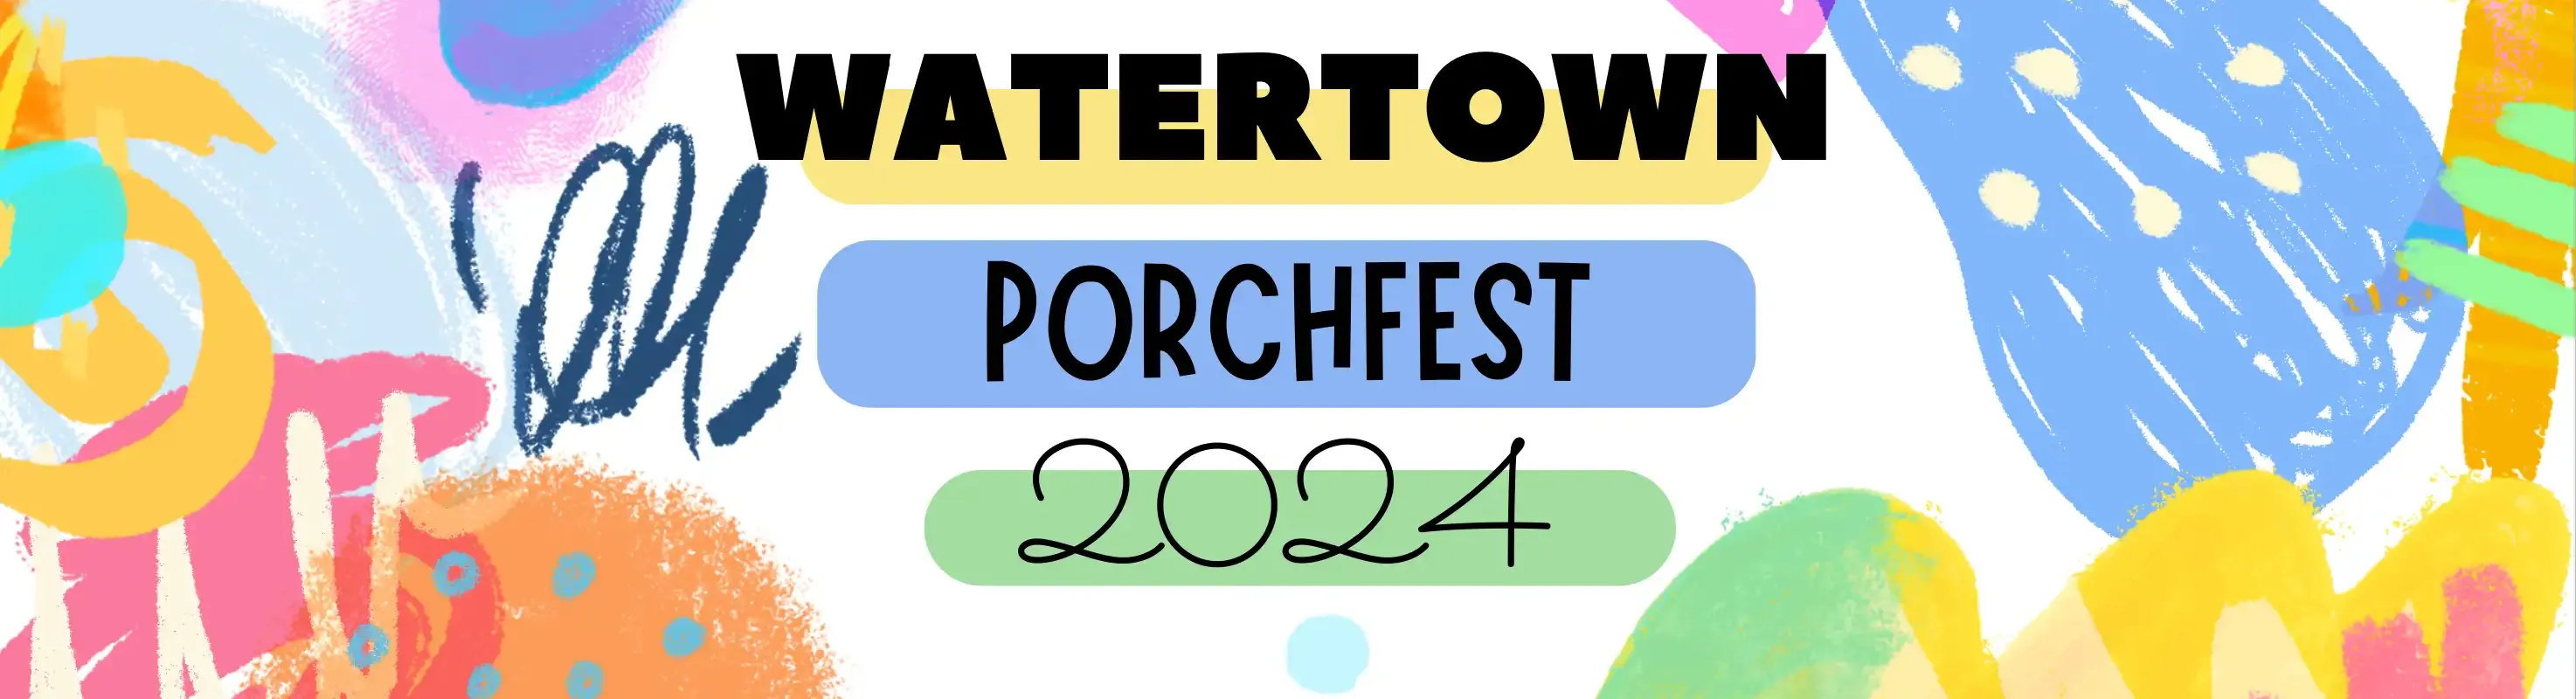 Watertown Porchfest 2024